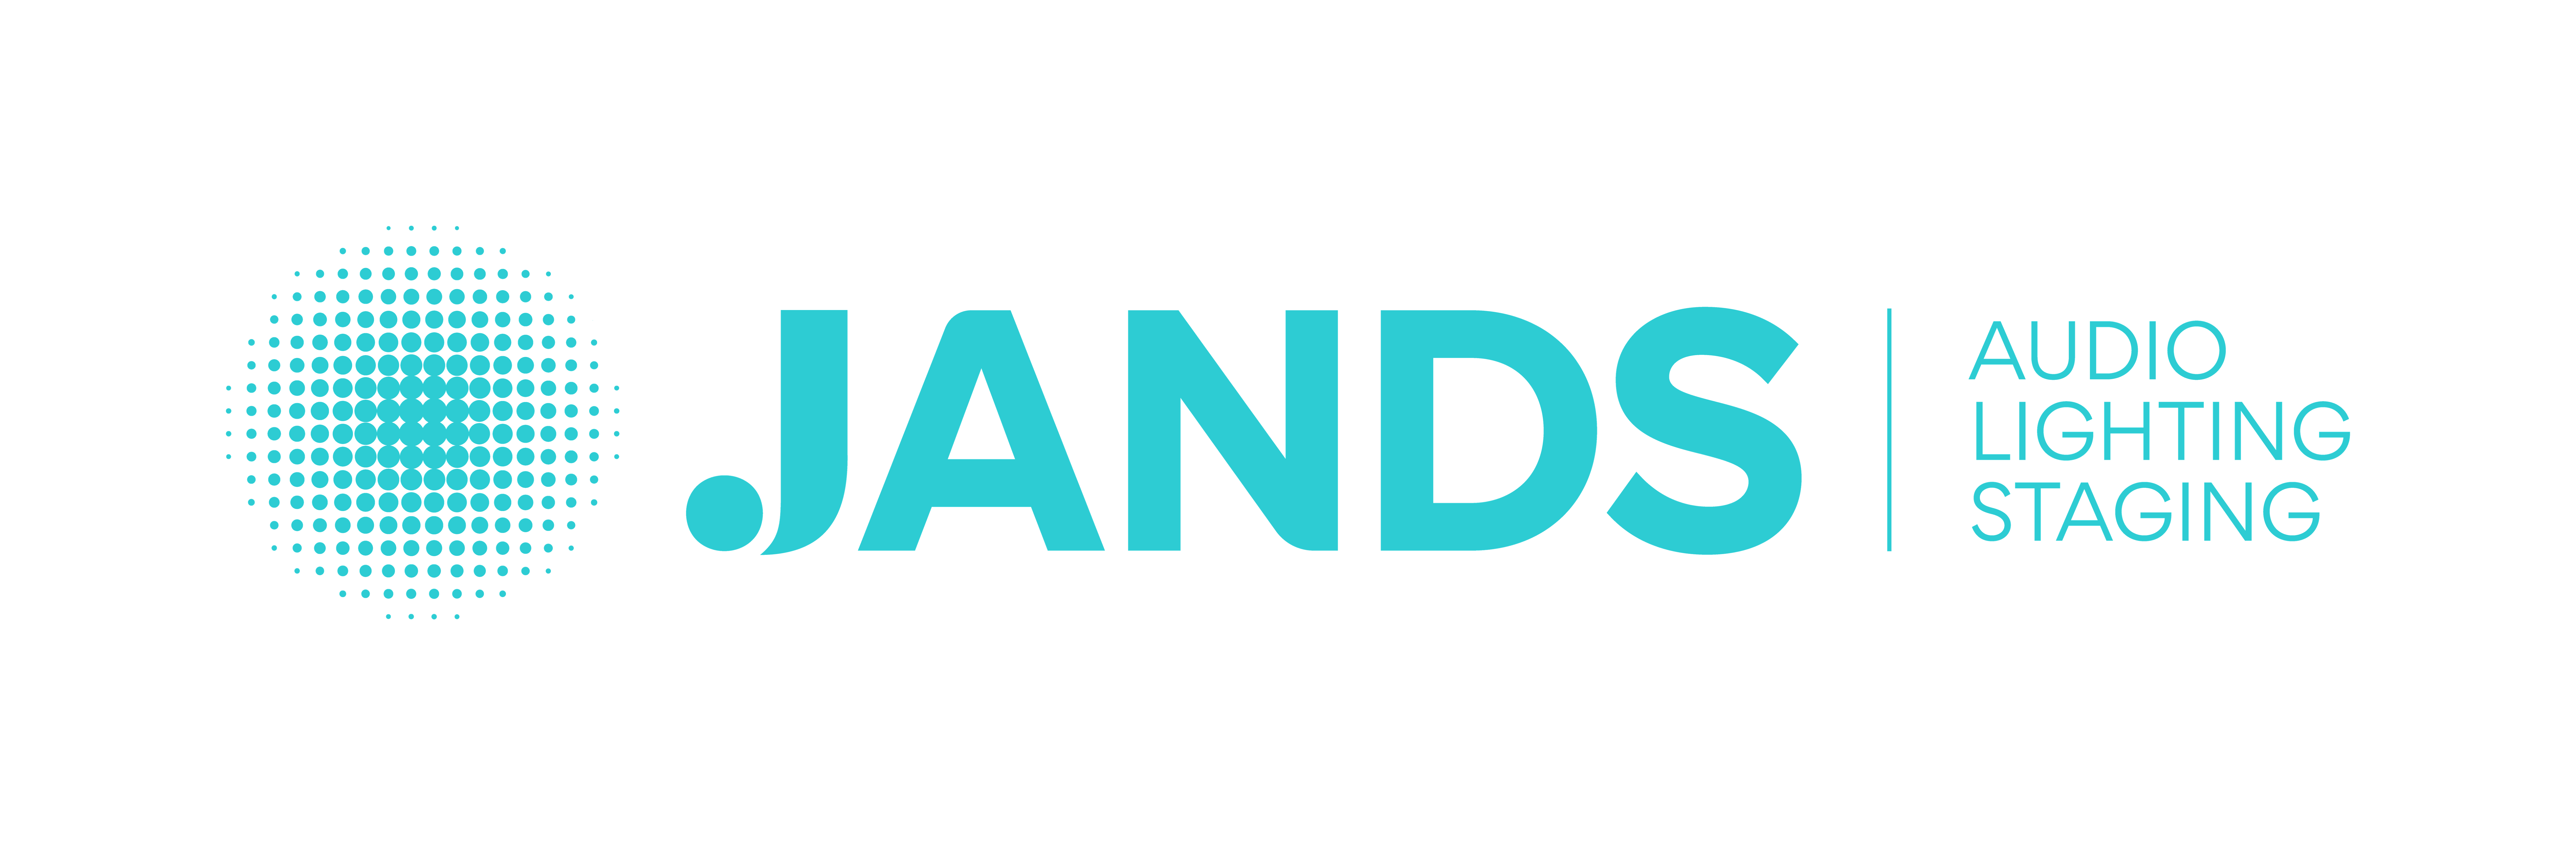 jands logo